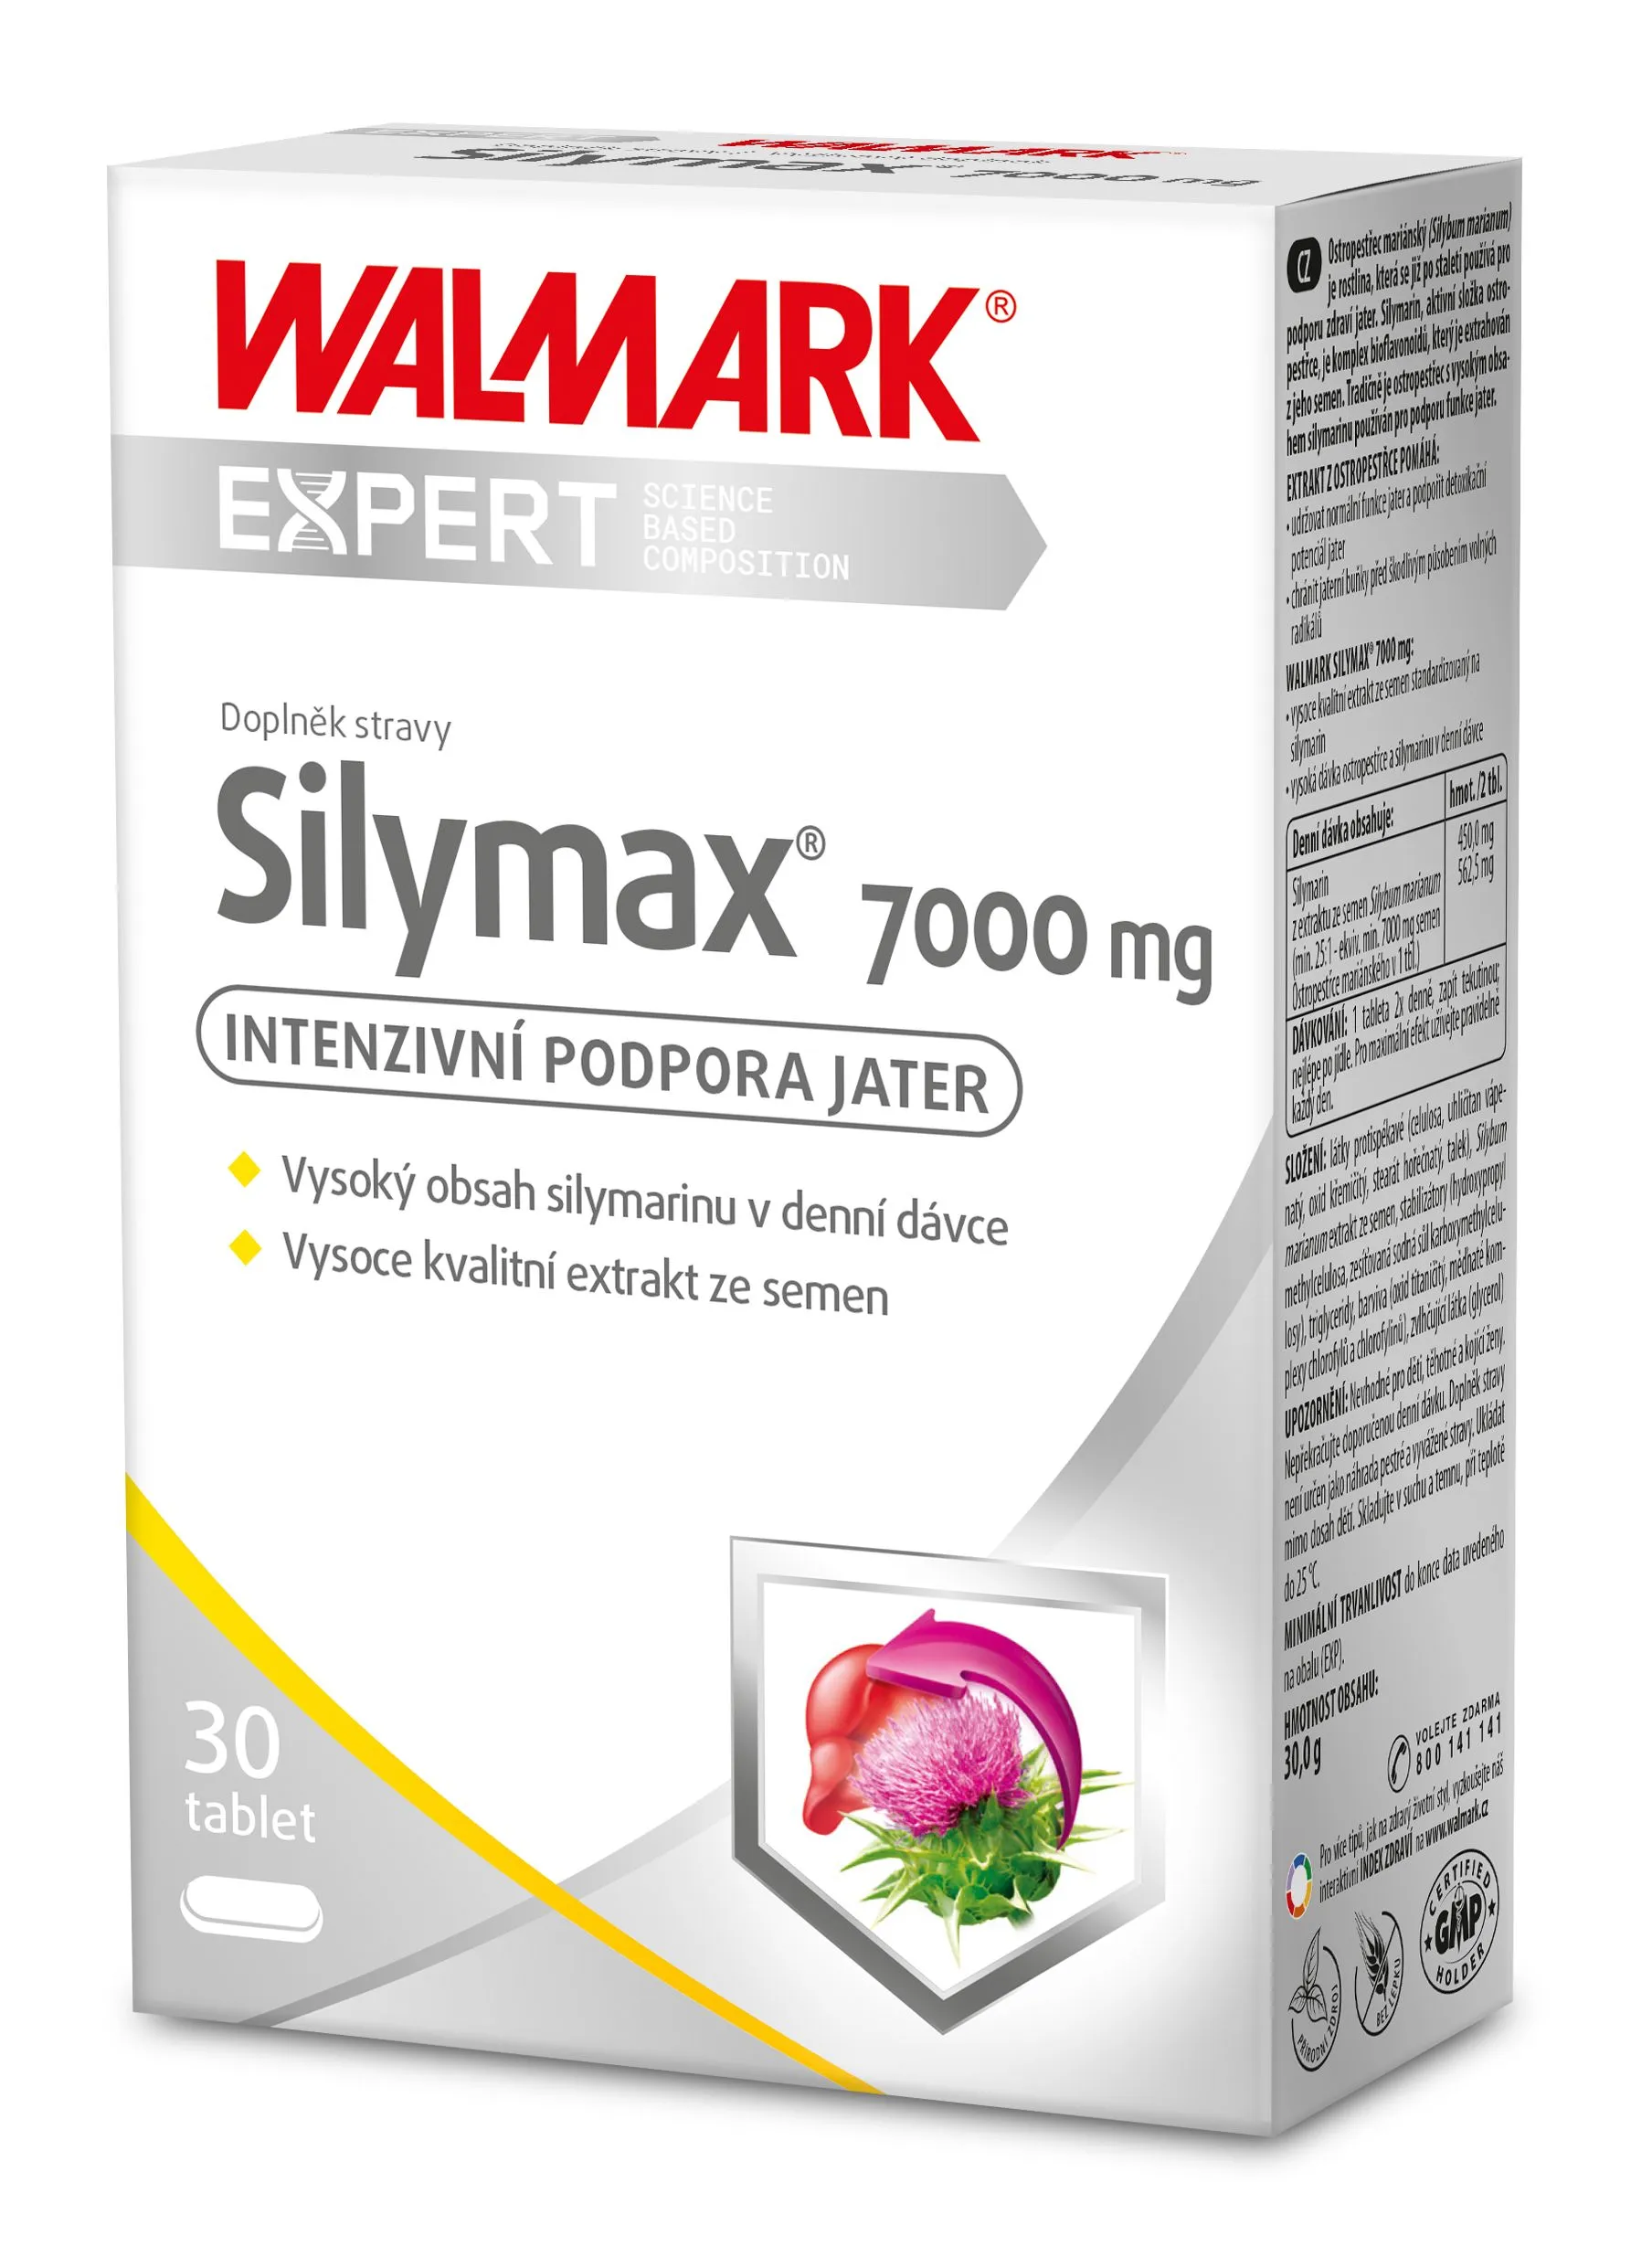 Walmark Silymax 7000 mg 30 tablet